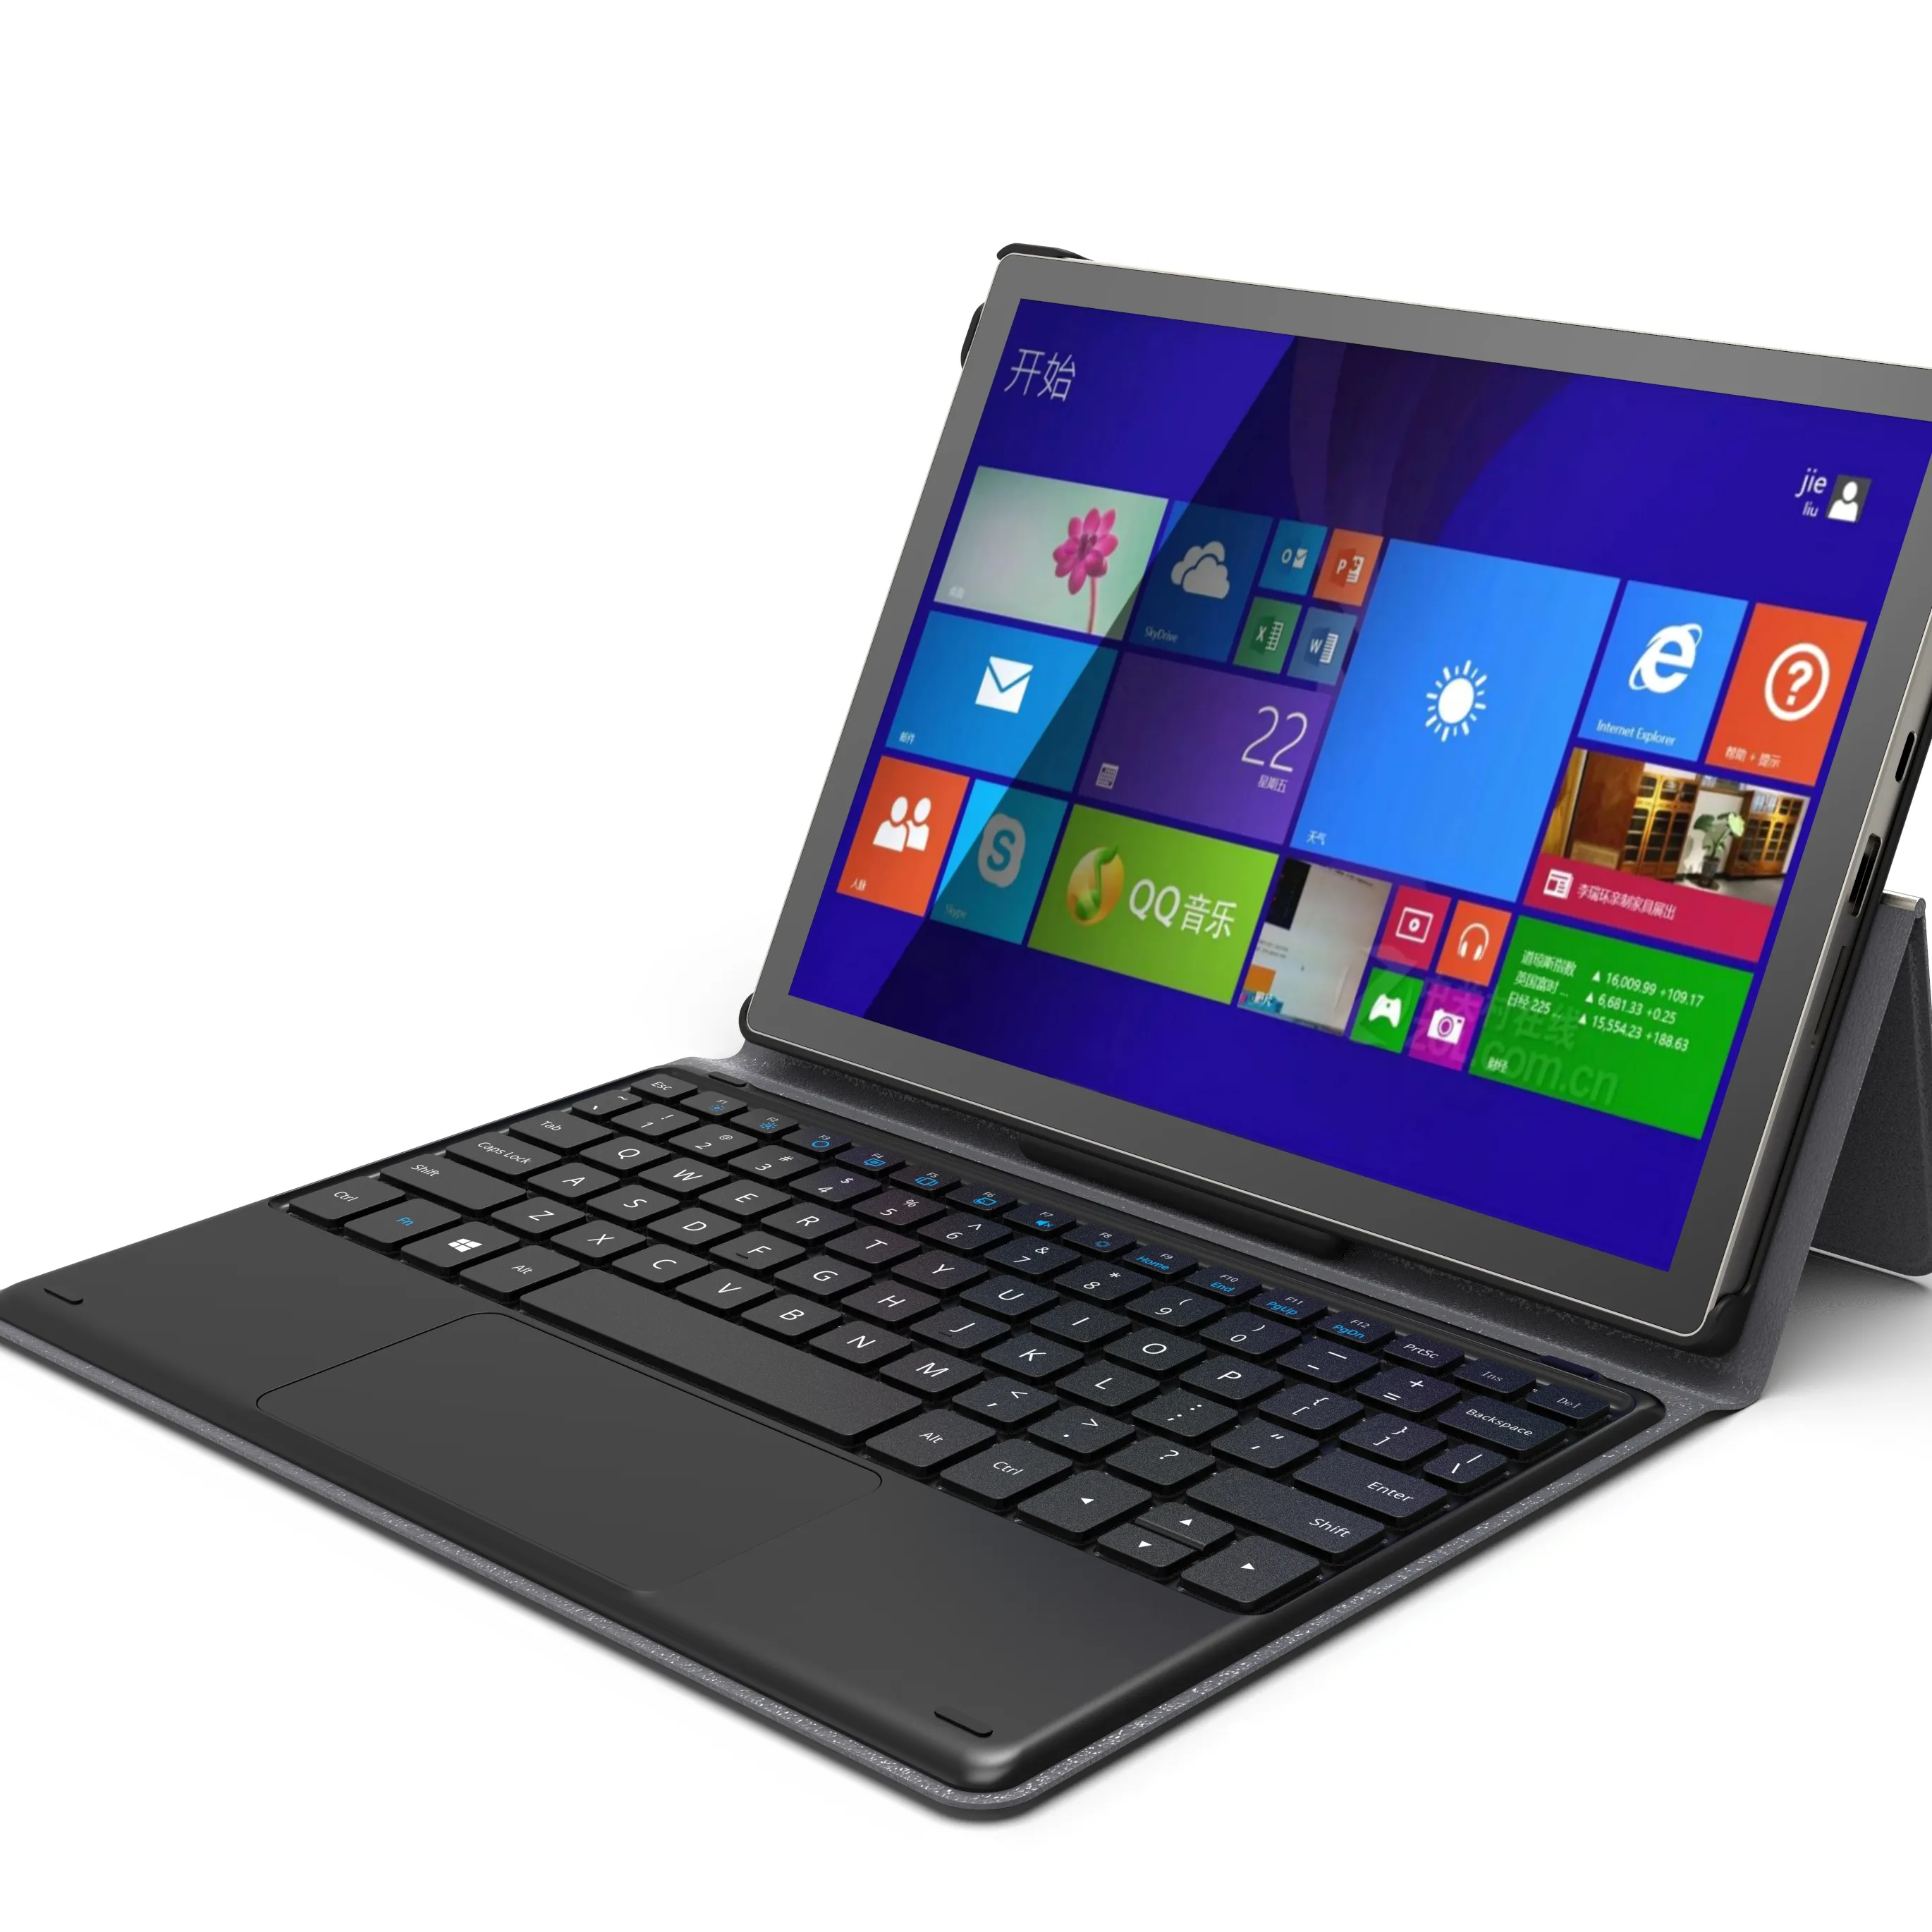 Nova boa qualidade atacado laptop pc 10.5 polegadas limpo usado tas remodelado laptop nos eua slim notebook